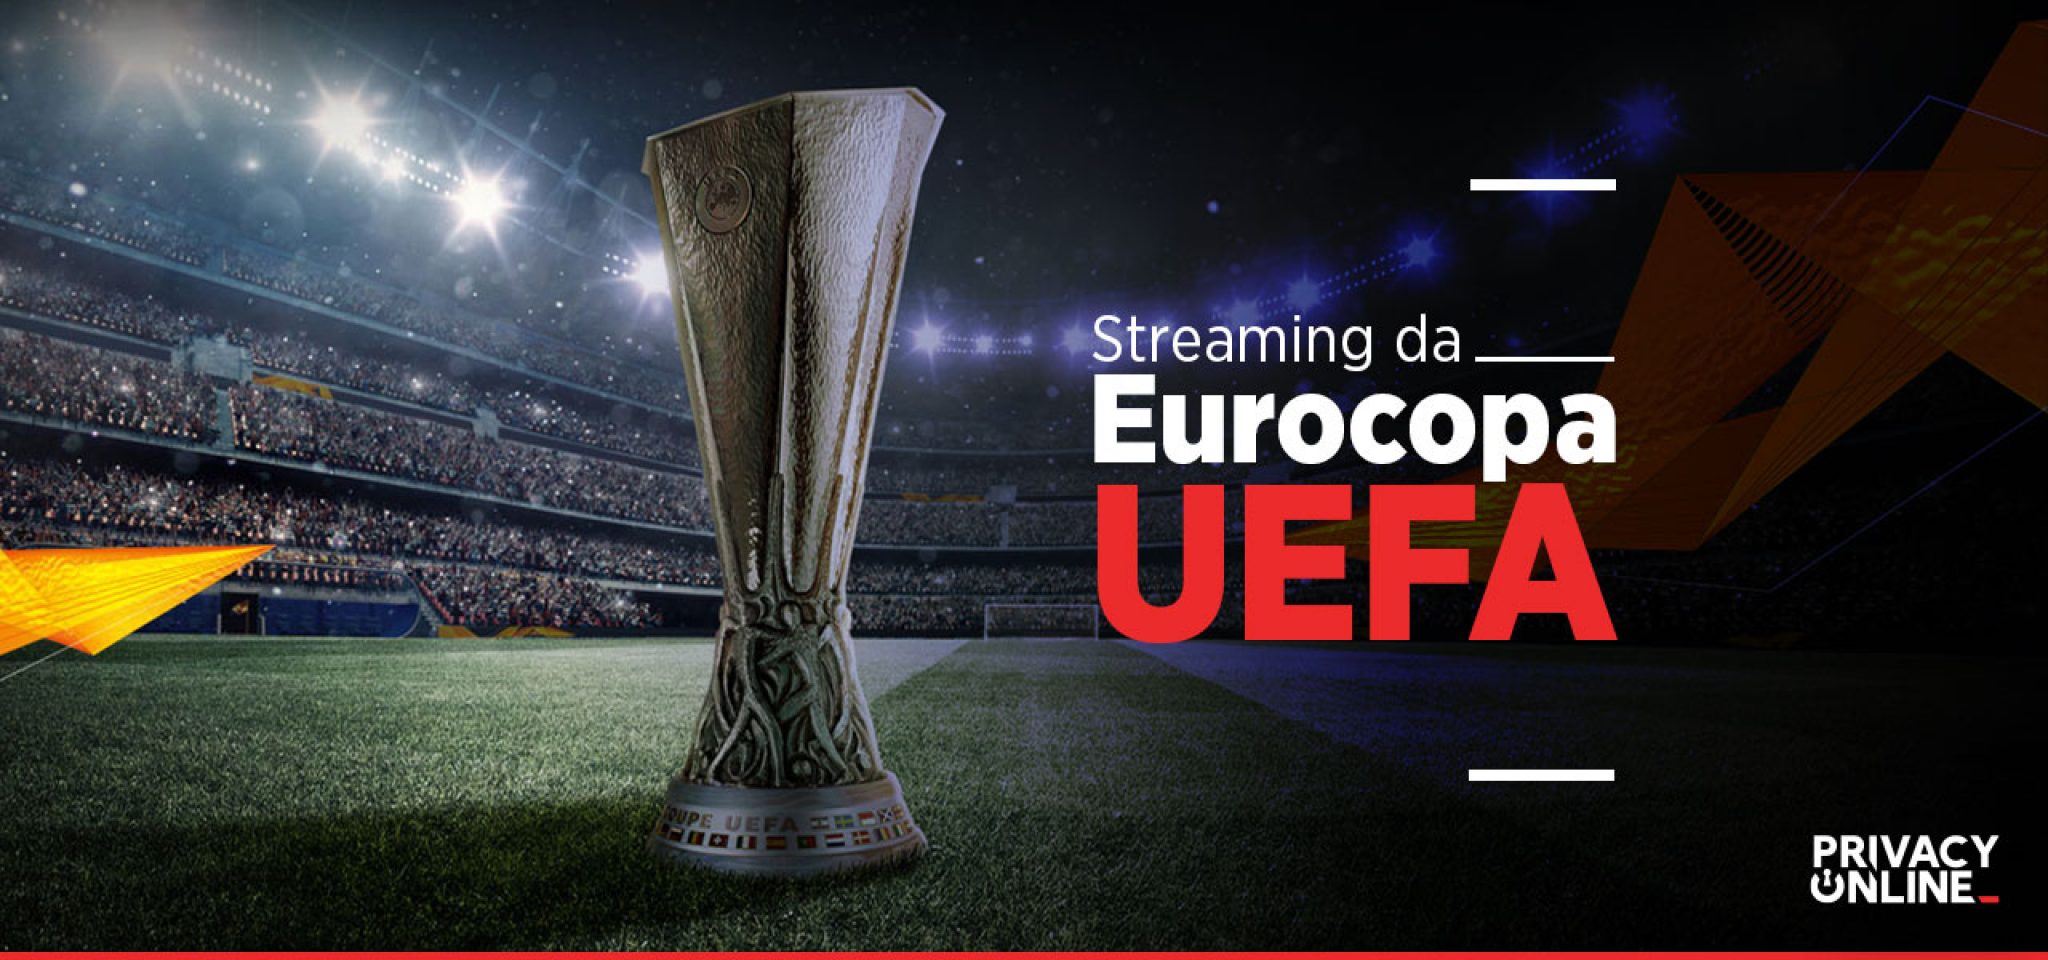 Campeonato Europeu de Futebol como assistir os jogos de qualquer lugar